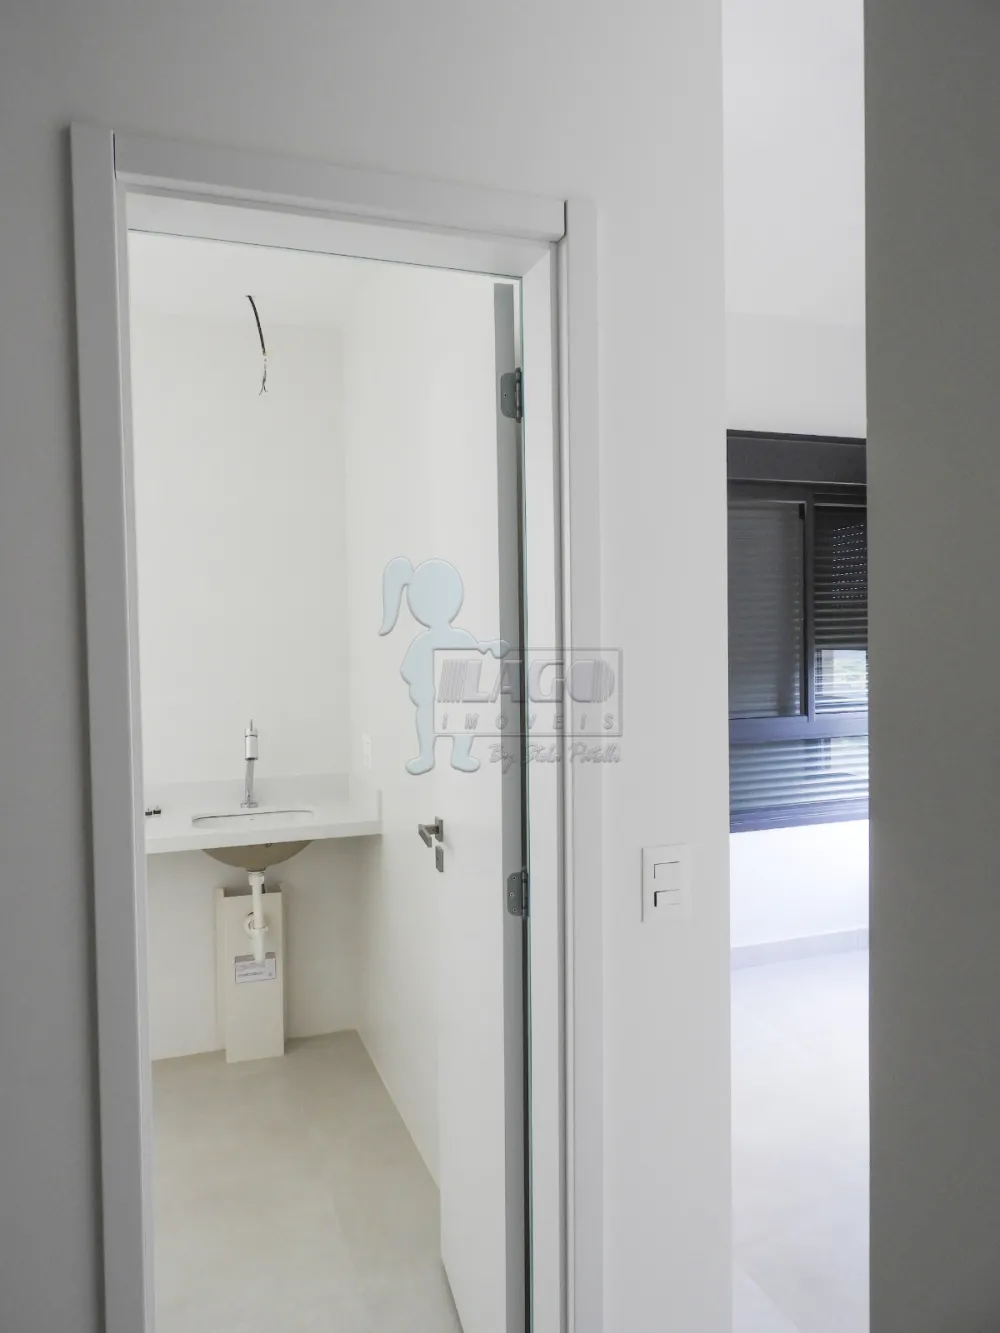 Comprar Apartamento / Padrão em Ribeirão Preto R$ 1.650.000,00 - Foto 14